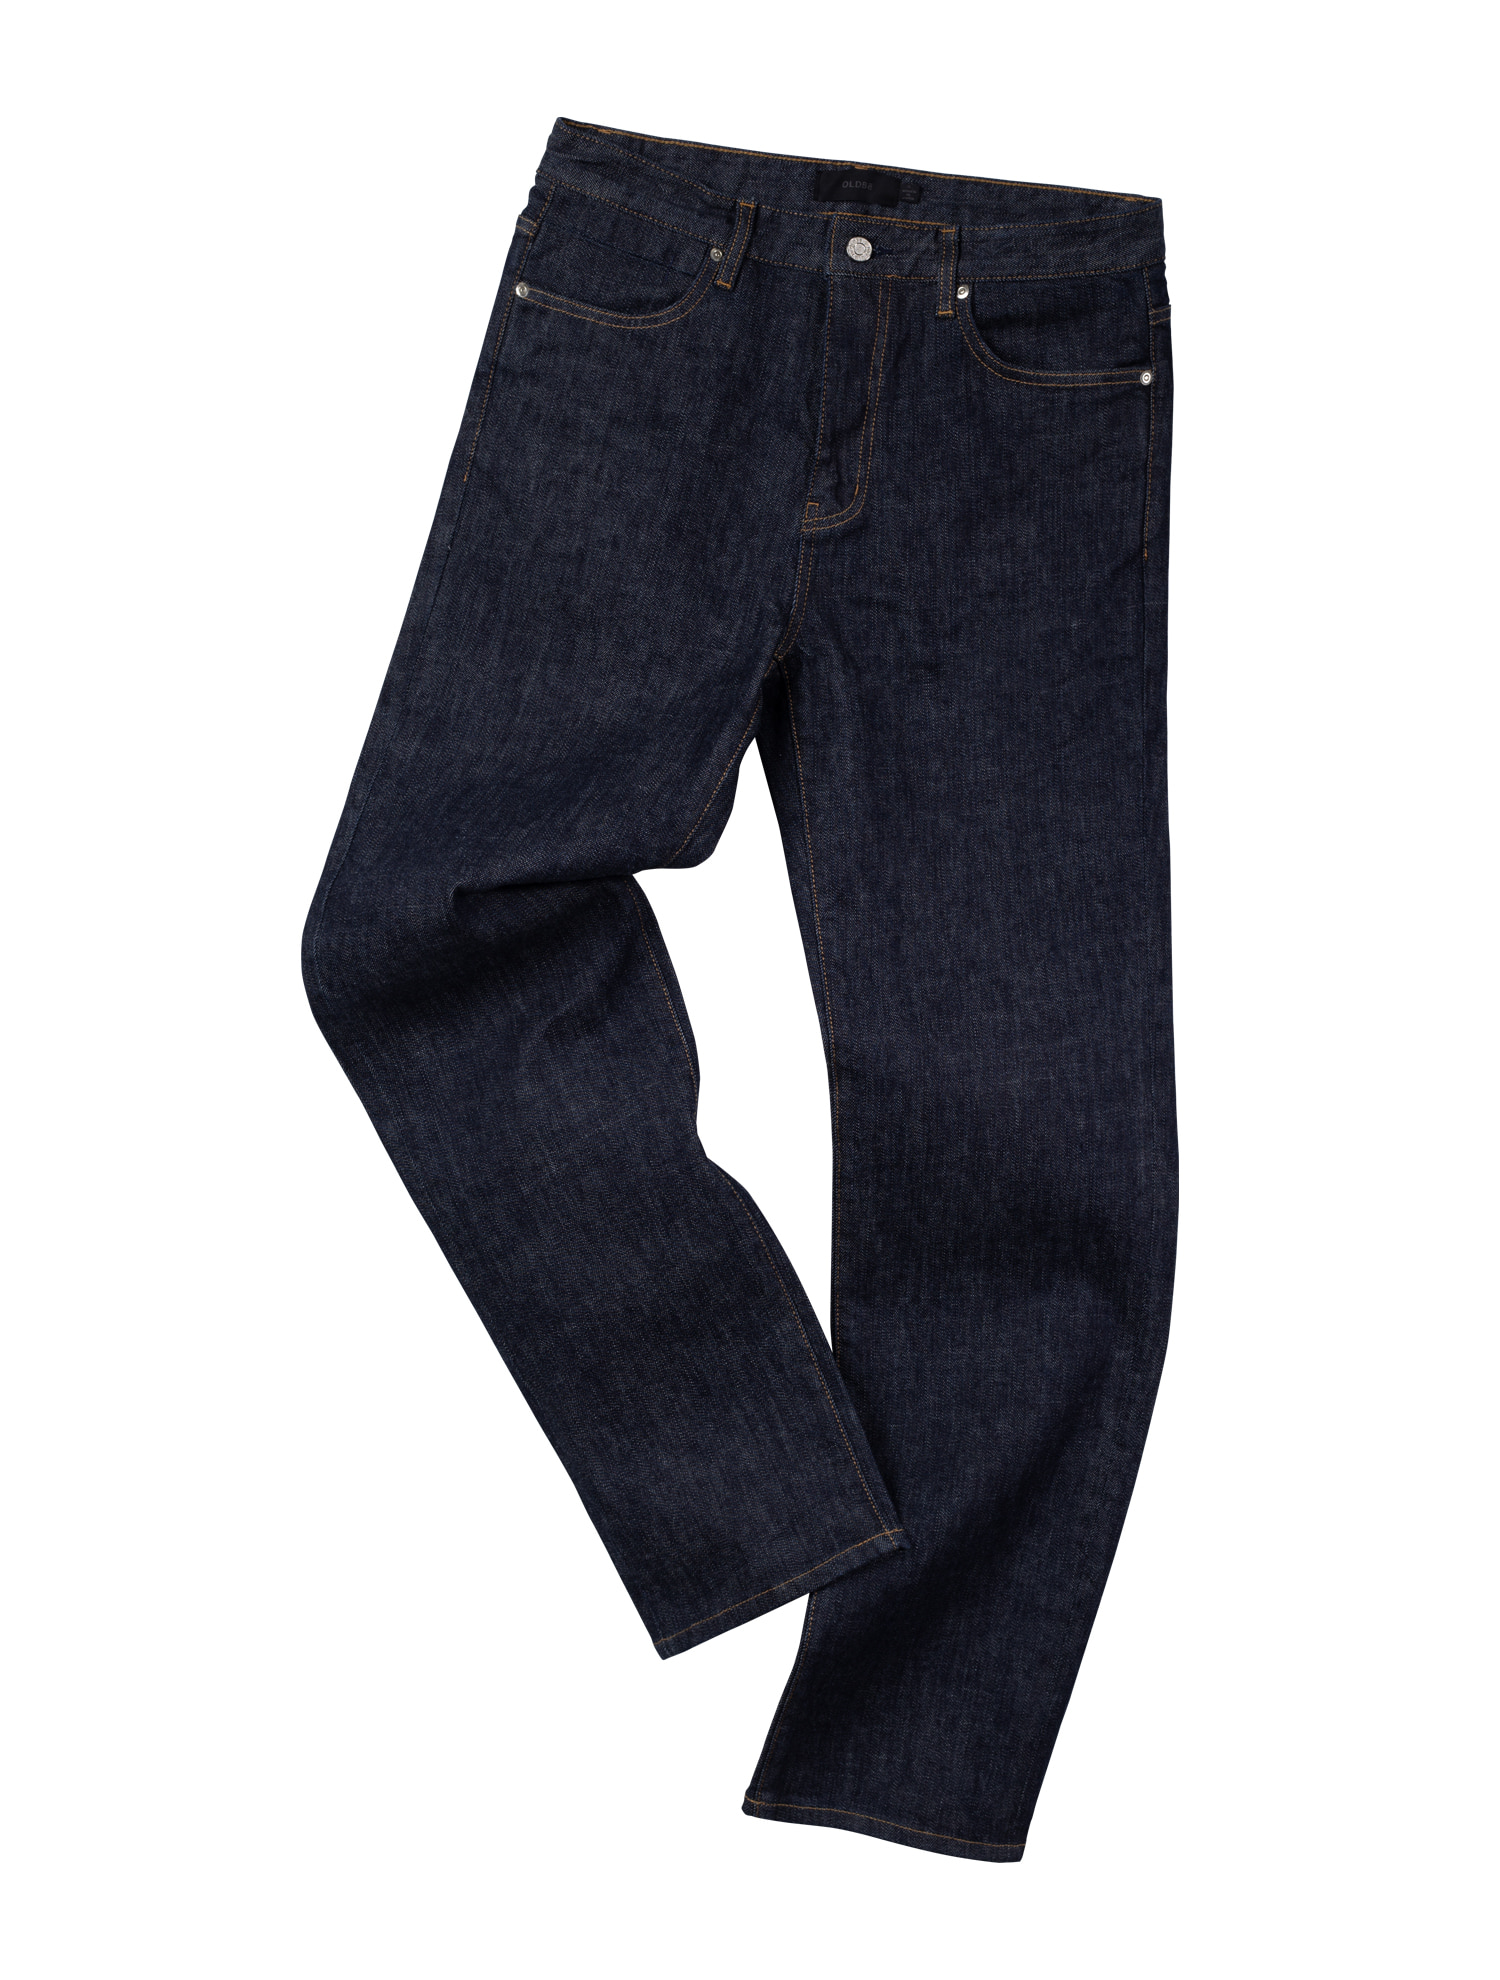 [올드비] TYPE4 Straight S1 Jeans